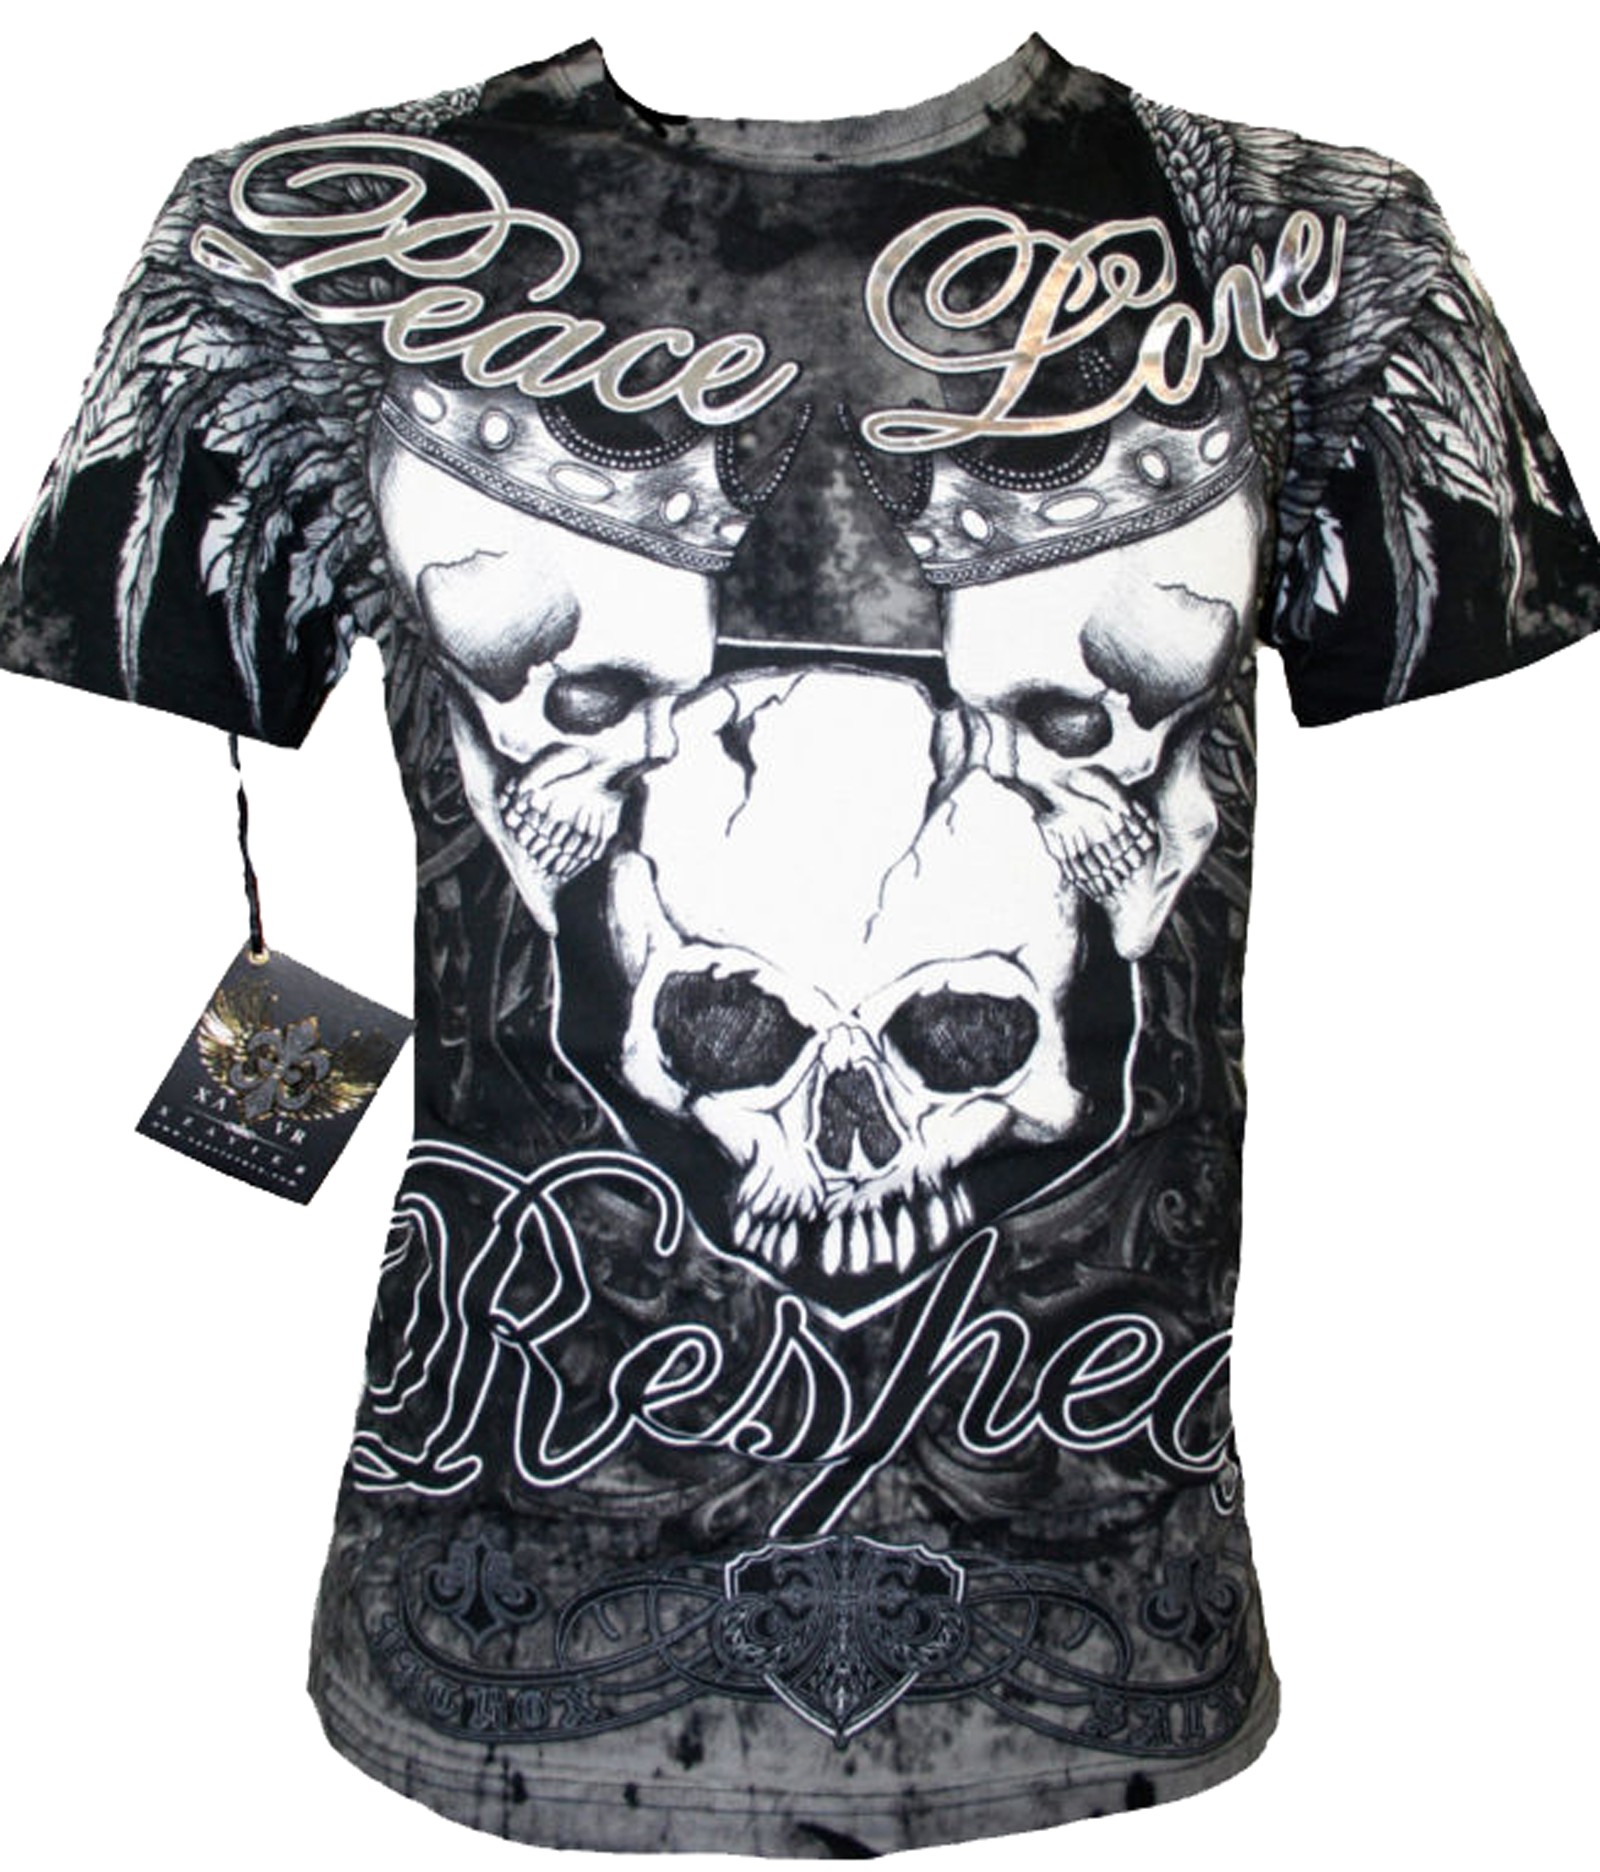 Xzavier - Respect Skulls T-Shirt Front